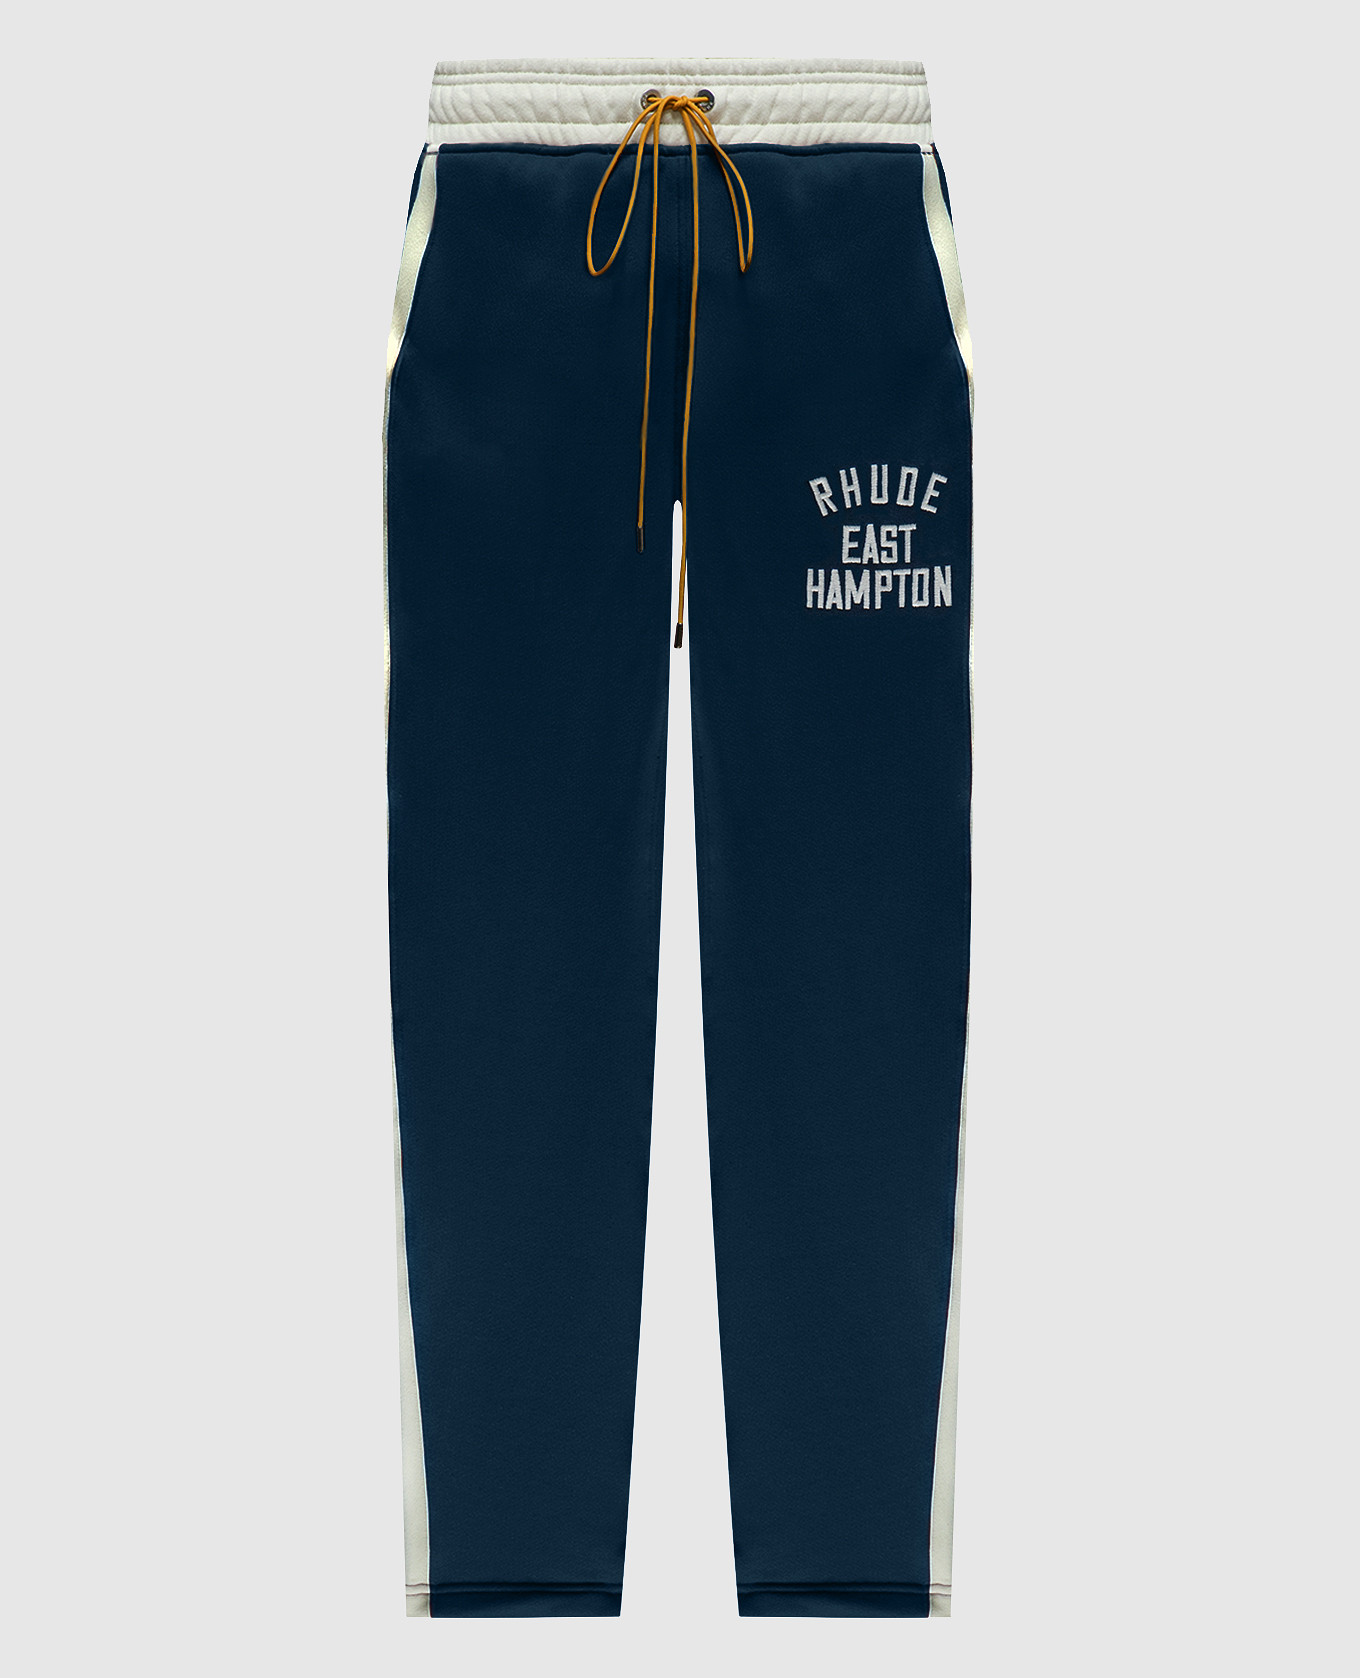 Синие спортивные штаны East Hampton с вышивкой логотипа